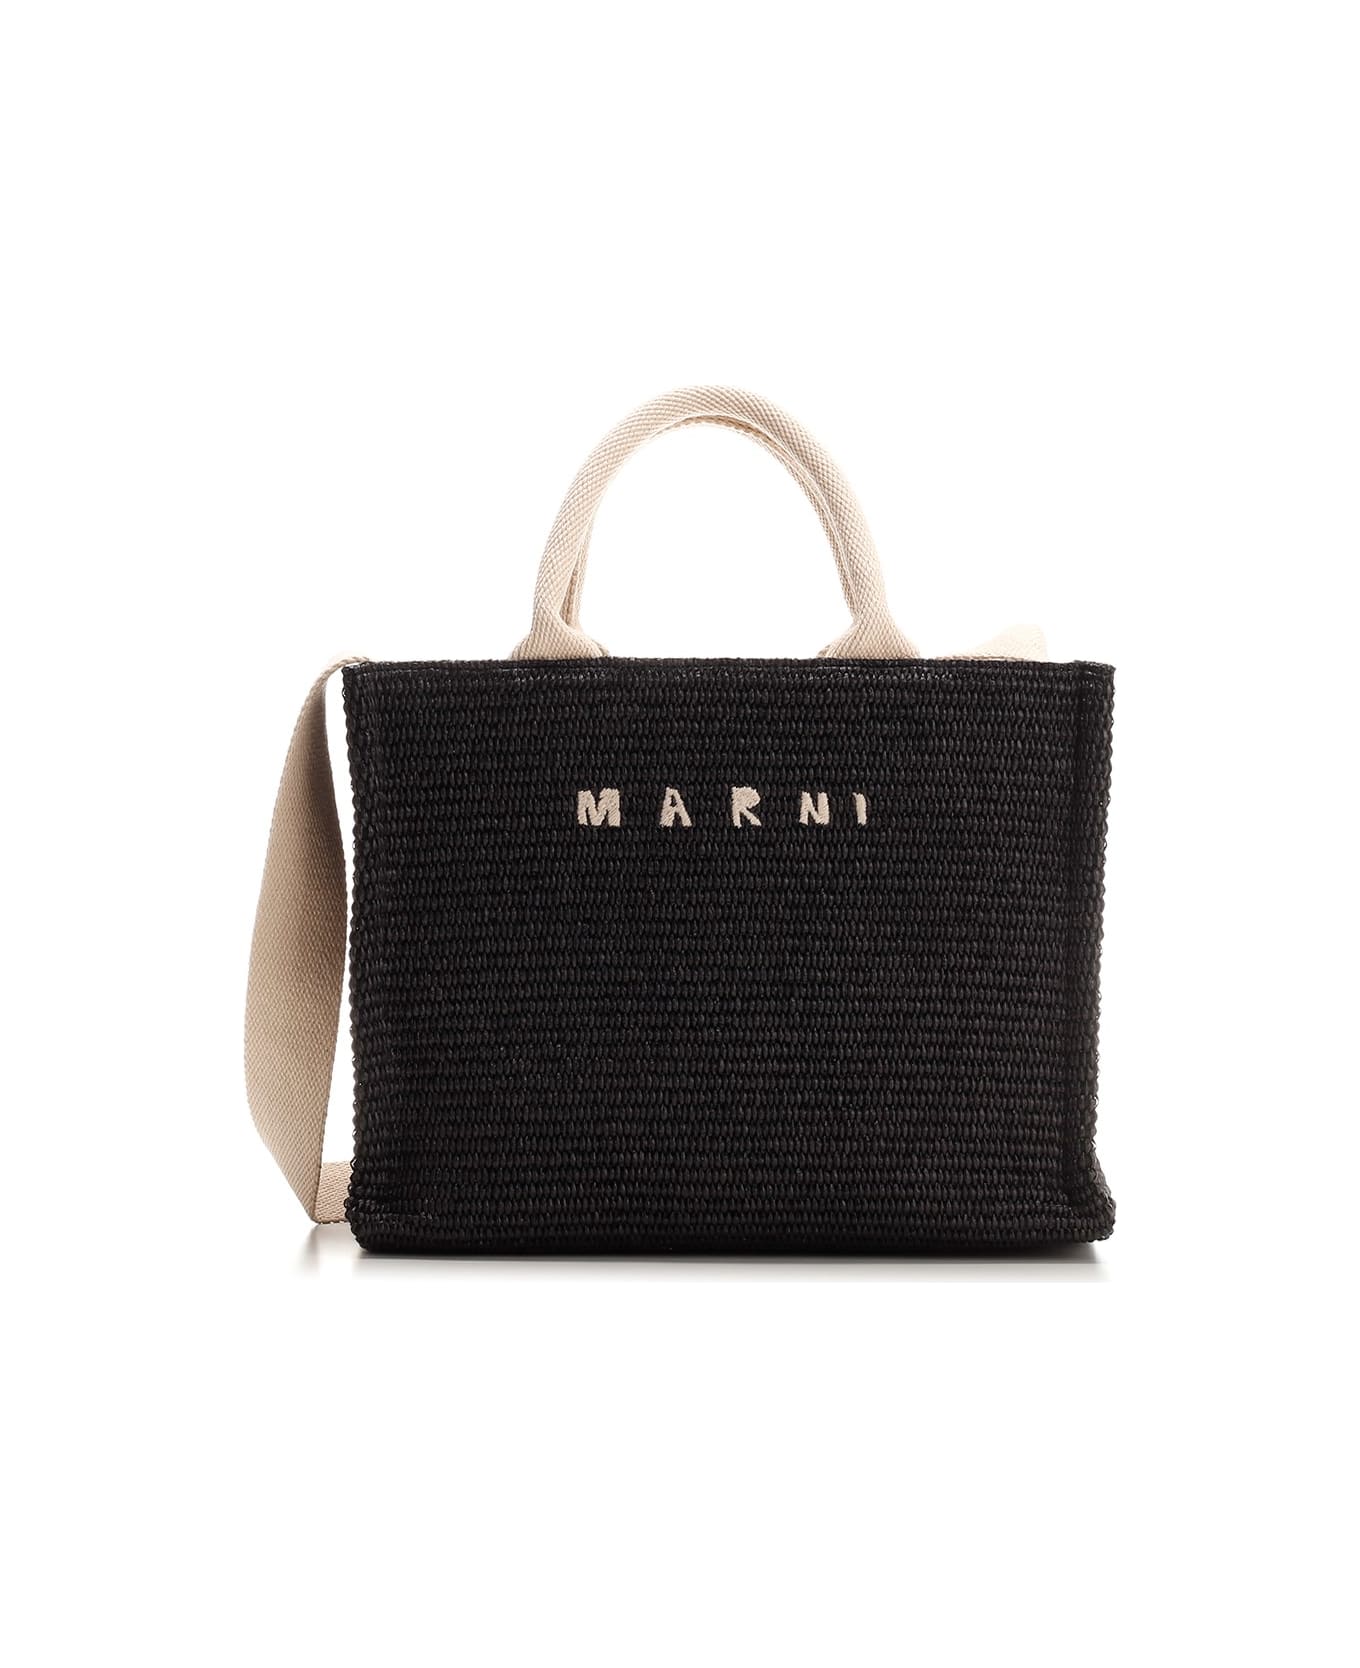 Marni Black Raffia Tote Bag